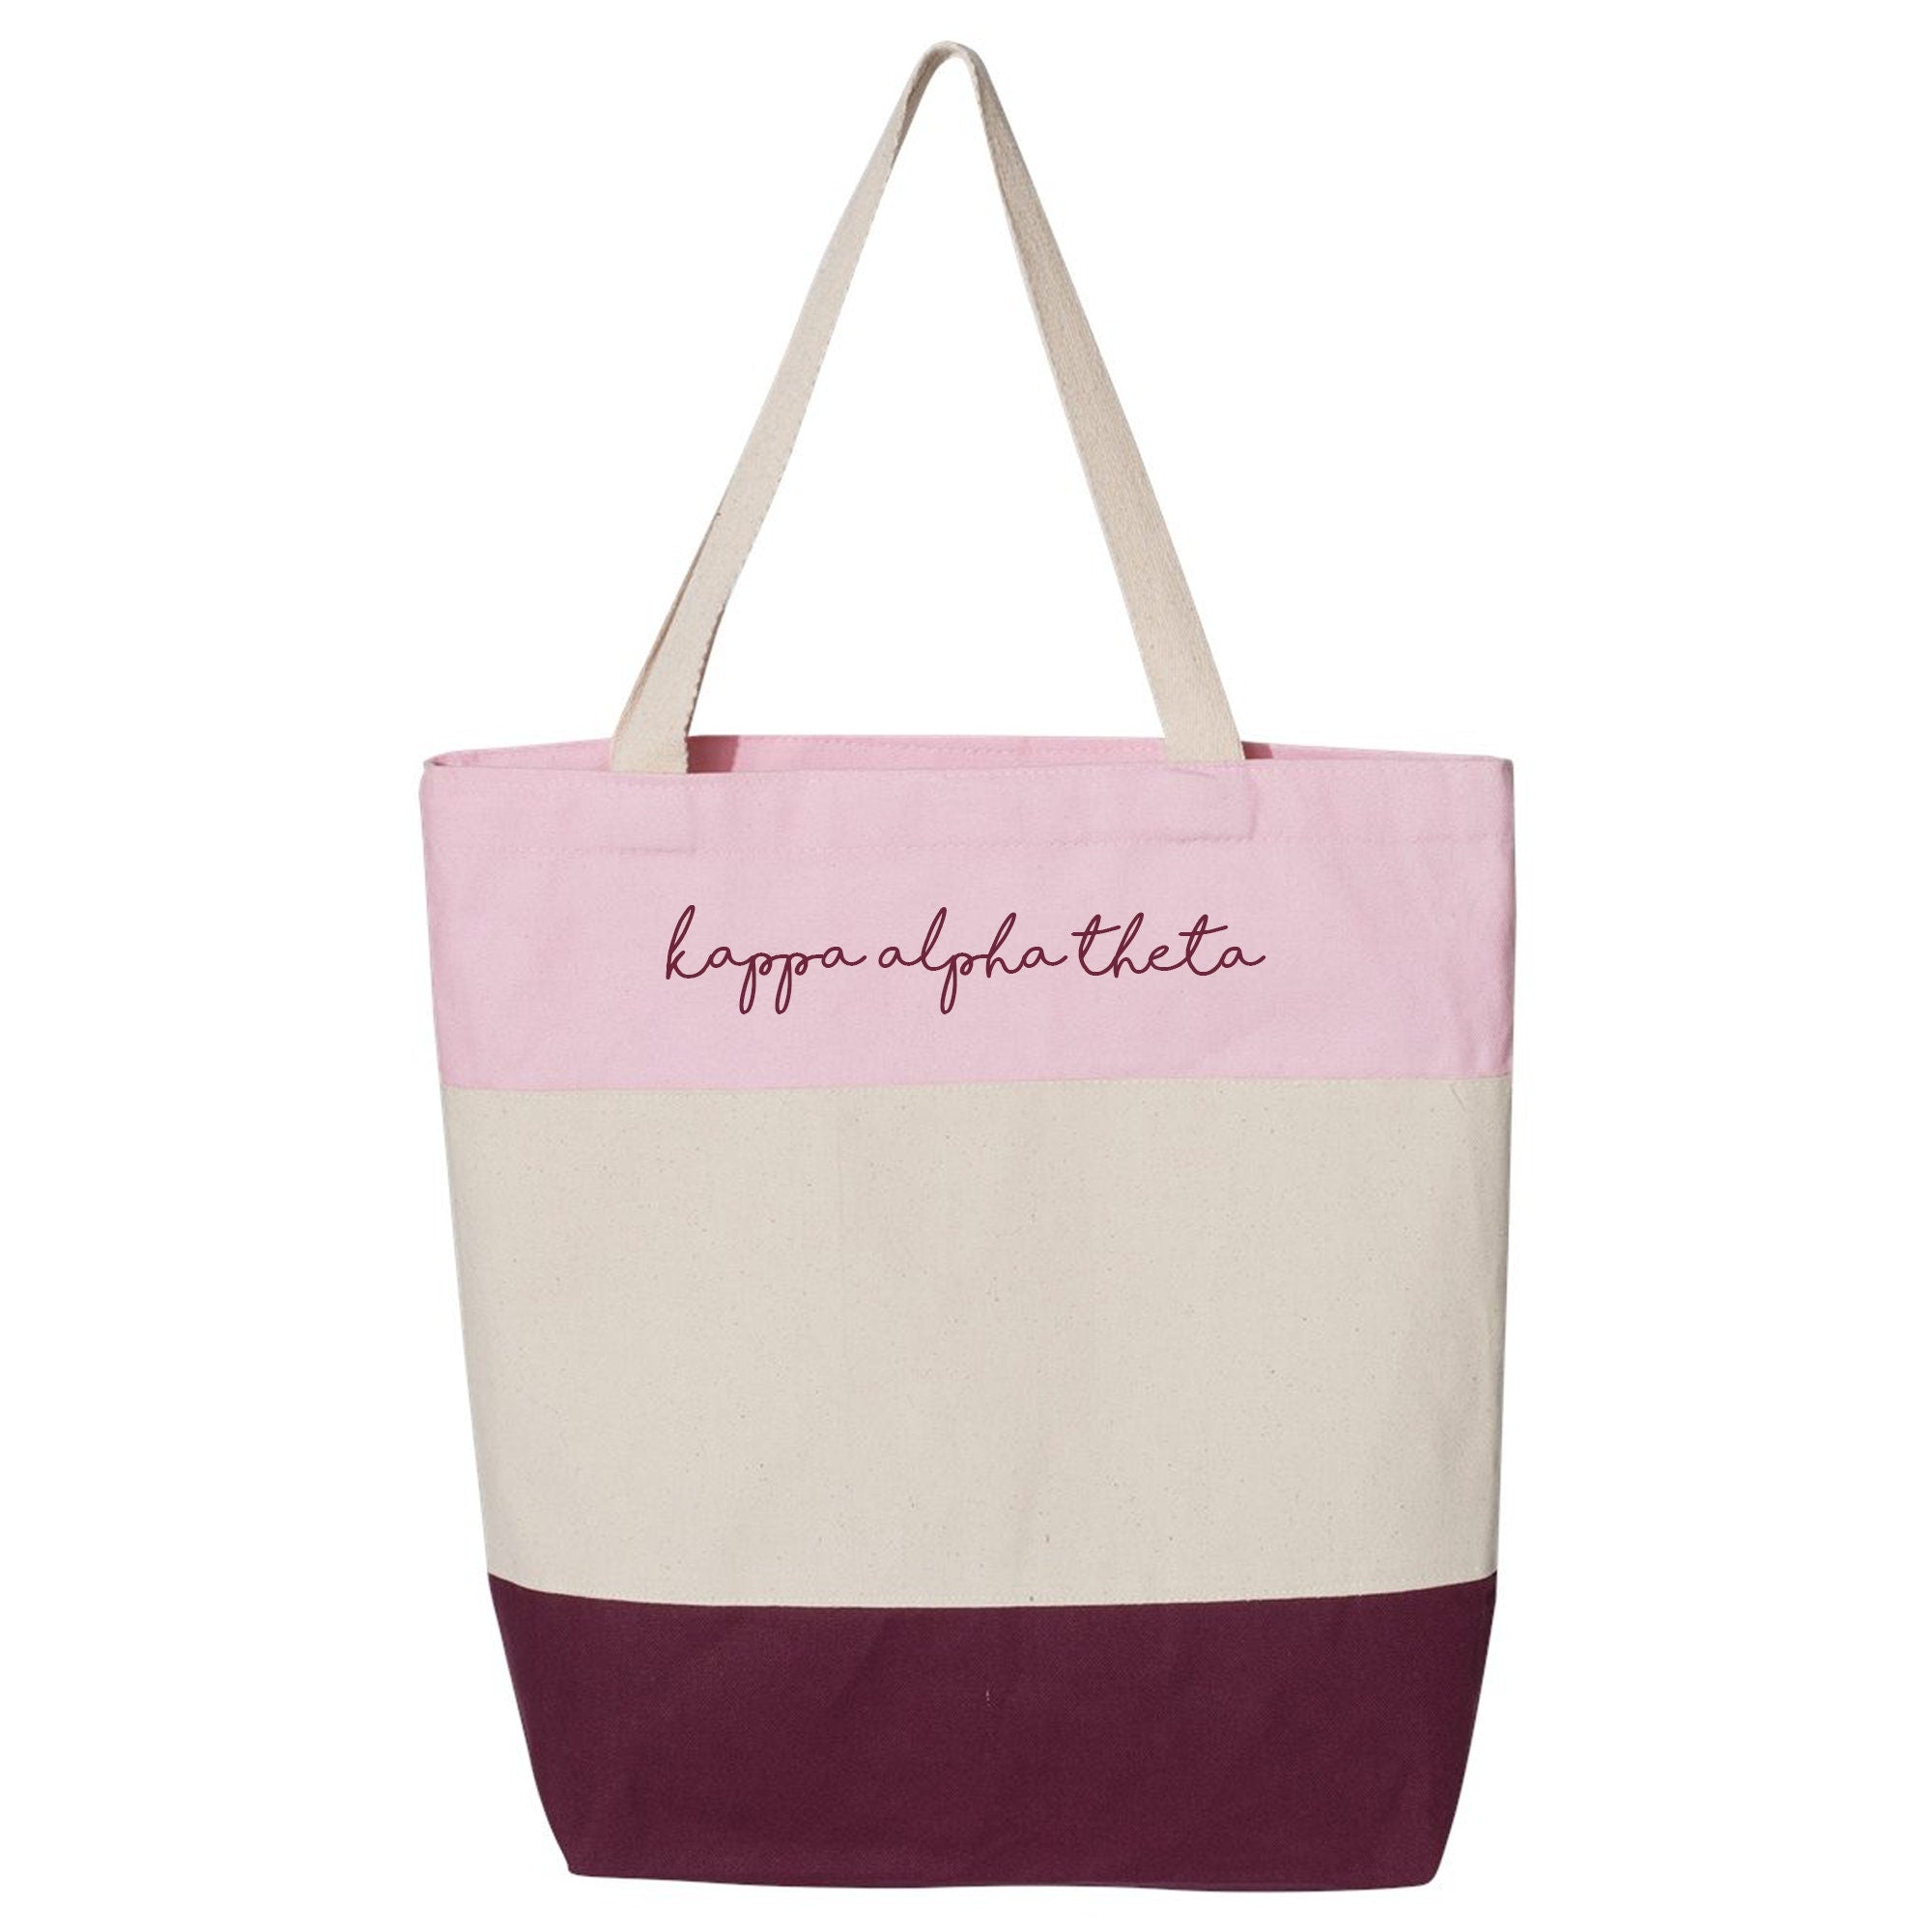 Kappa Alpha Theta - Tote Bag, Sorority Gift, Bid Day Gift, Big & Little Reveal - Go Greek Chic